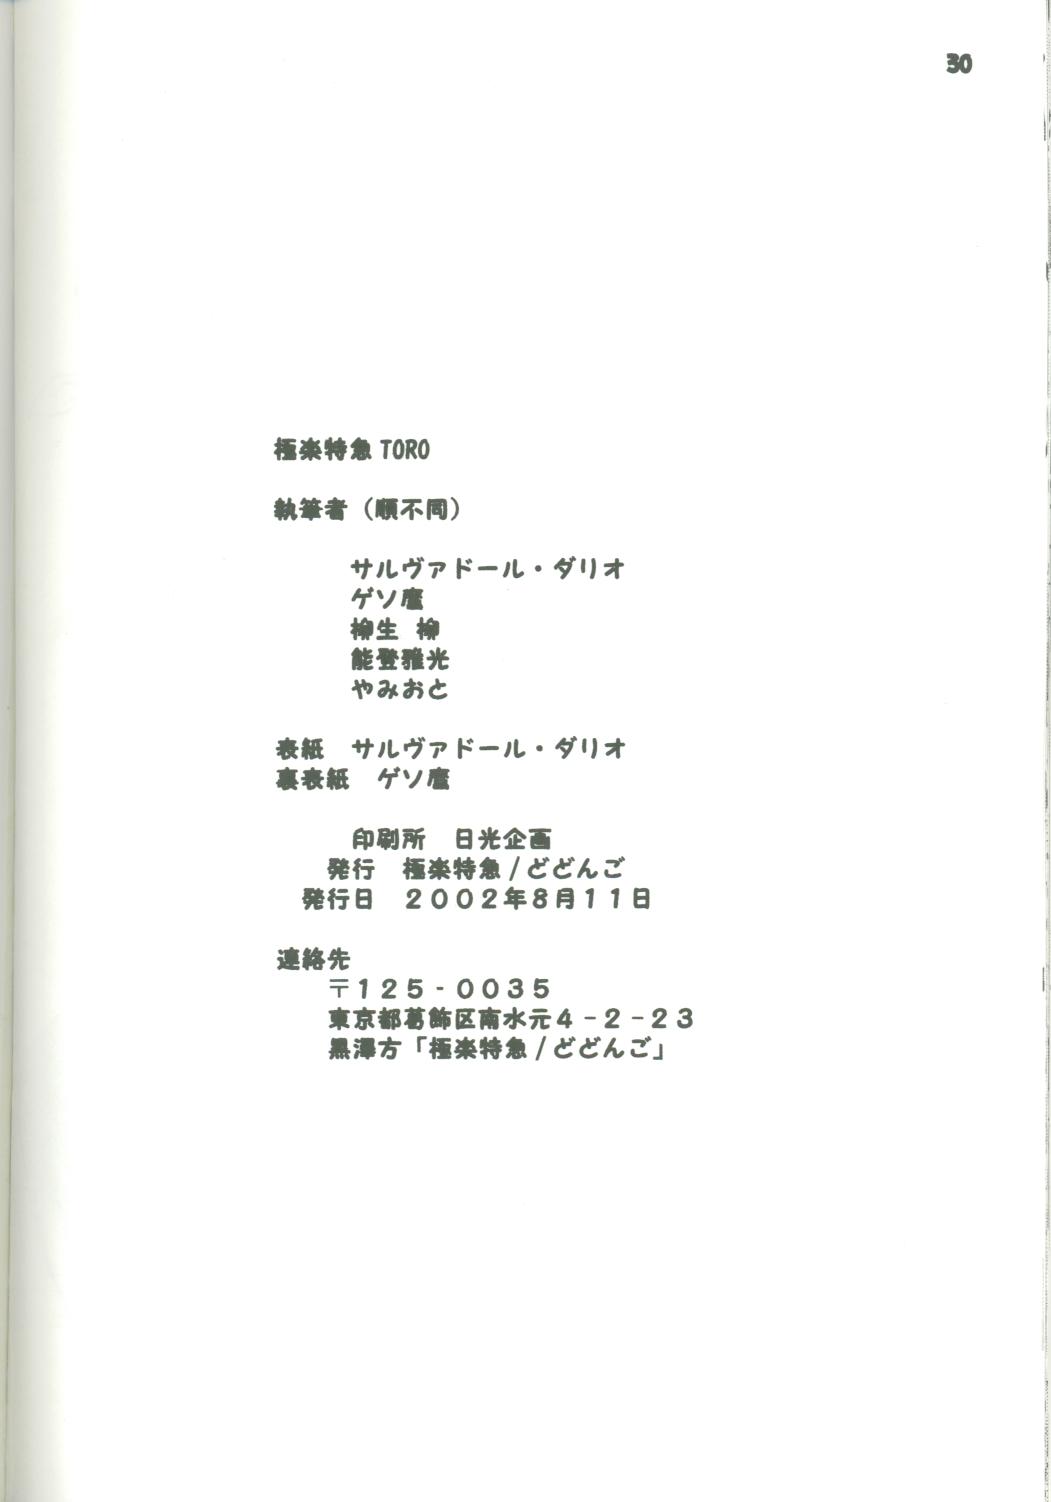 (C62) [Gokuraku Tokkyuu (Dodongo)] Gokuraku Tokkyuu TORO (Megaman Battle Network) page 29 full